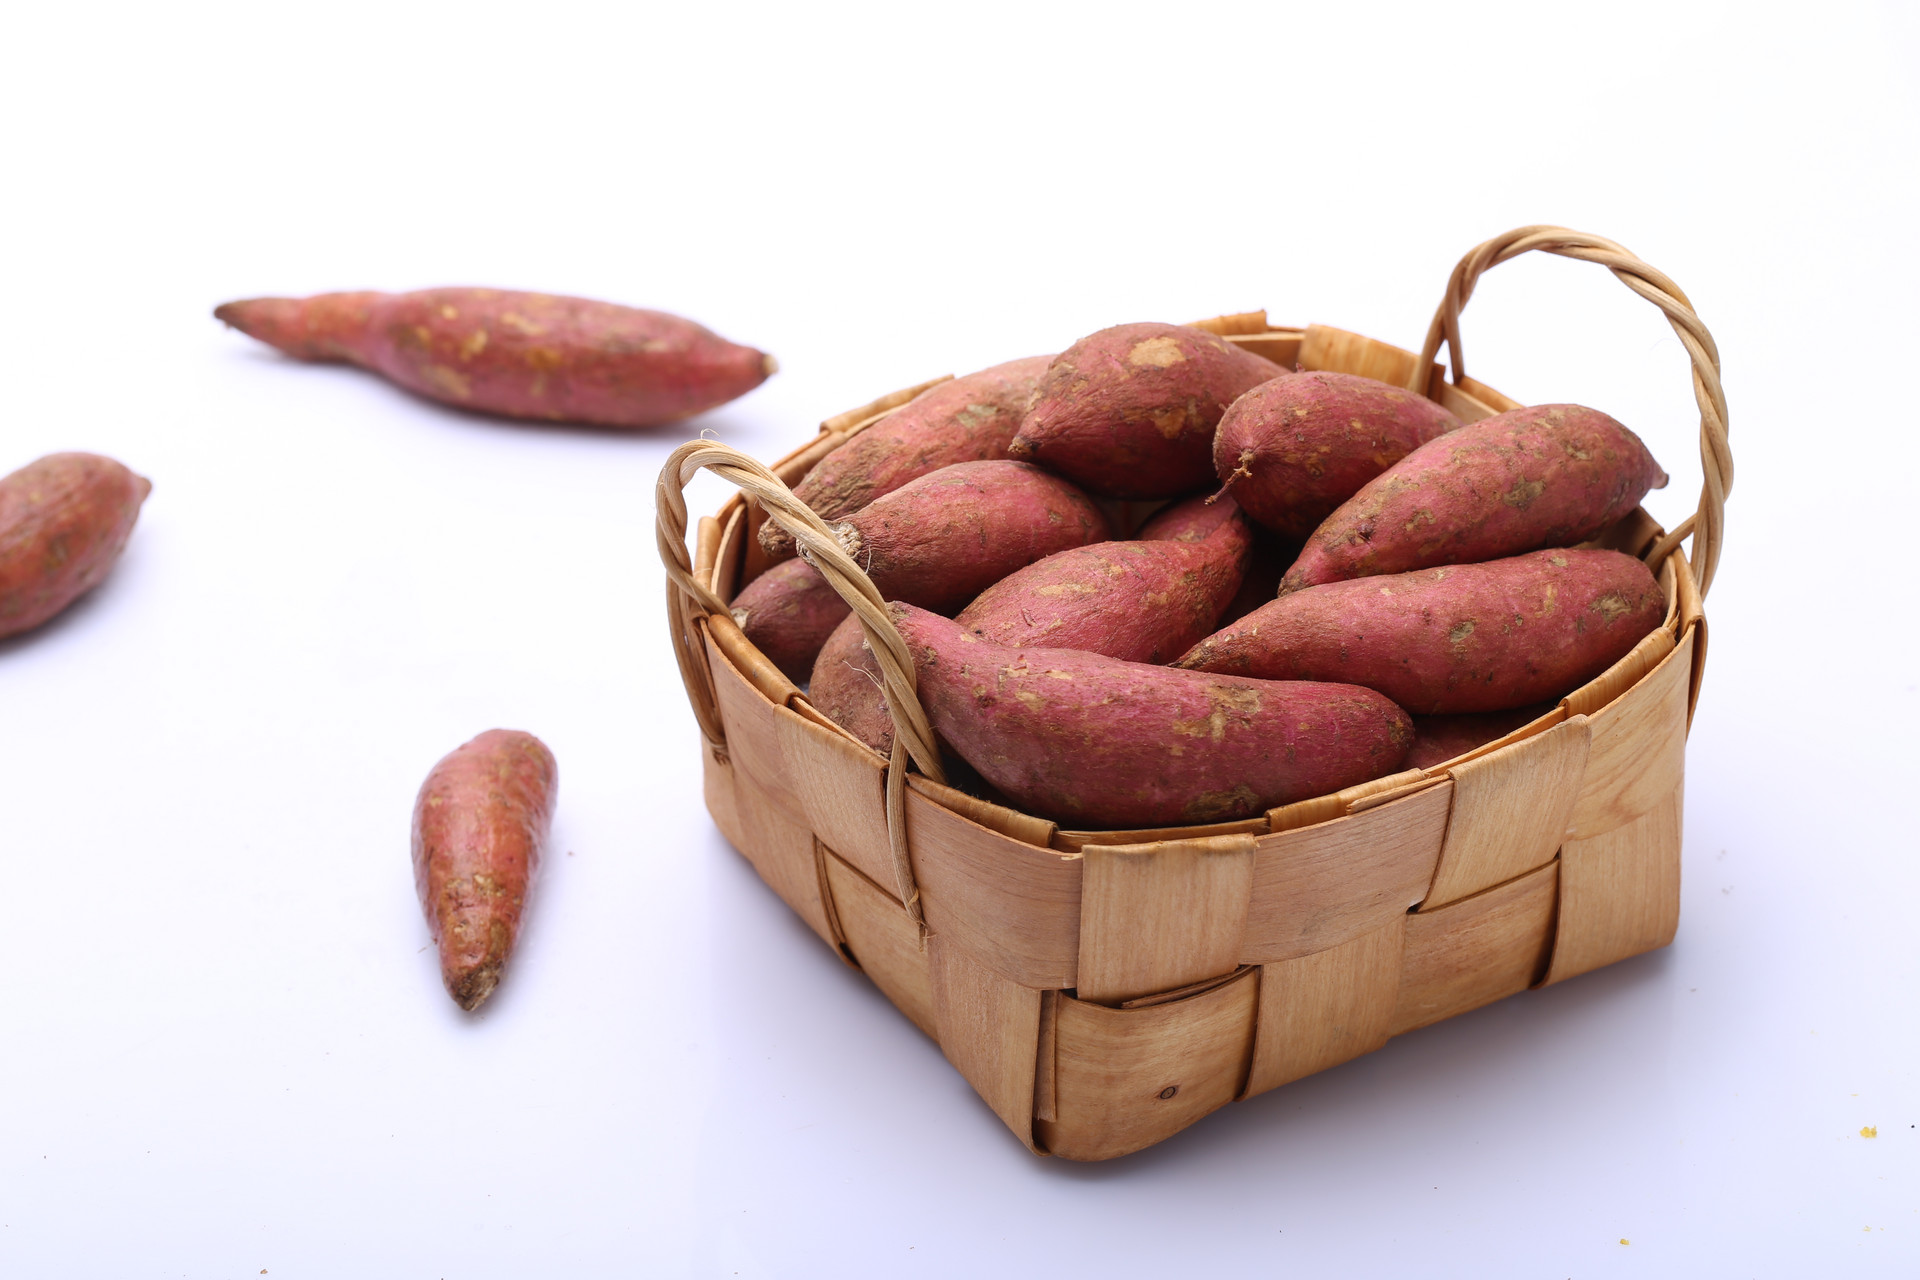 哺乳期红薯可以怎么吃好 红薯食谱推荐2